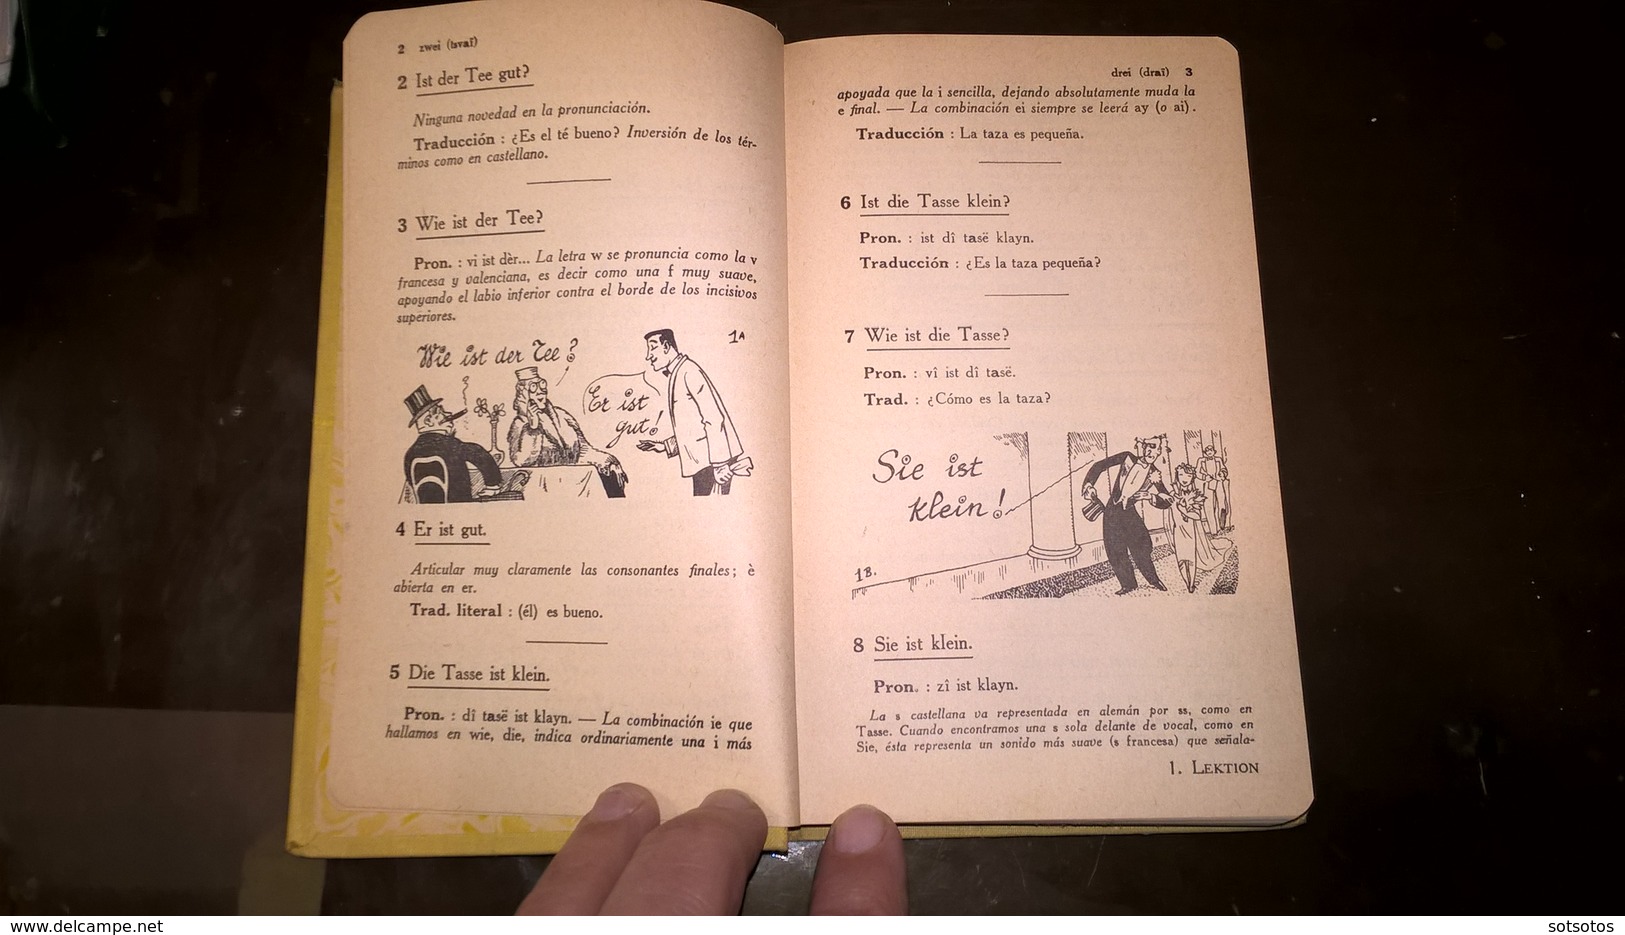 EL ALEMAN Sin ESFUERZO Por A. CHEREL - METODO DIARIO ASSIMIL - PARIS (1959) - 376 Pages (11,50x18 Cent) - IN VERY GOOD - Sprachwissenschaften